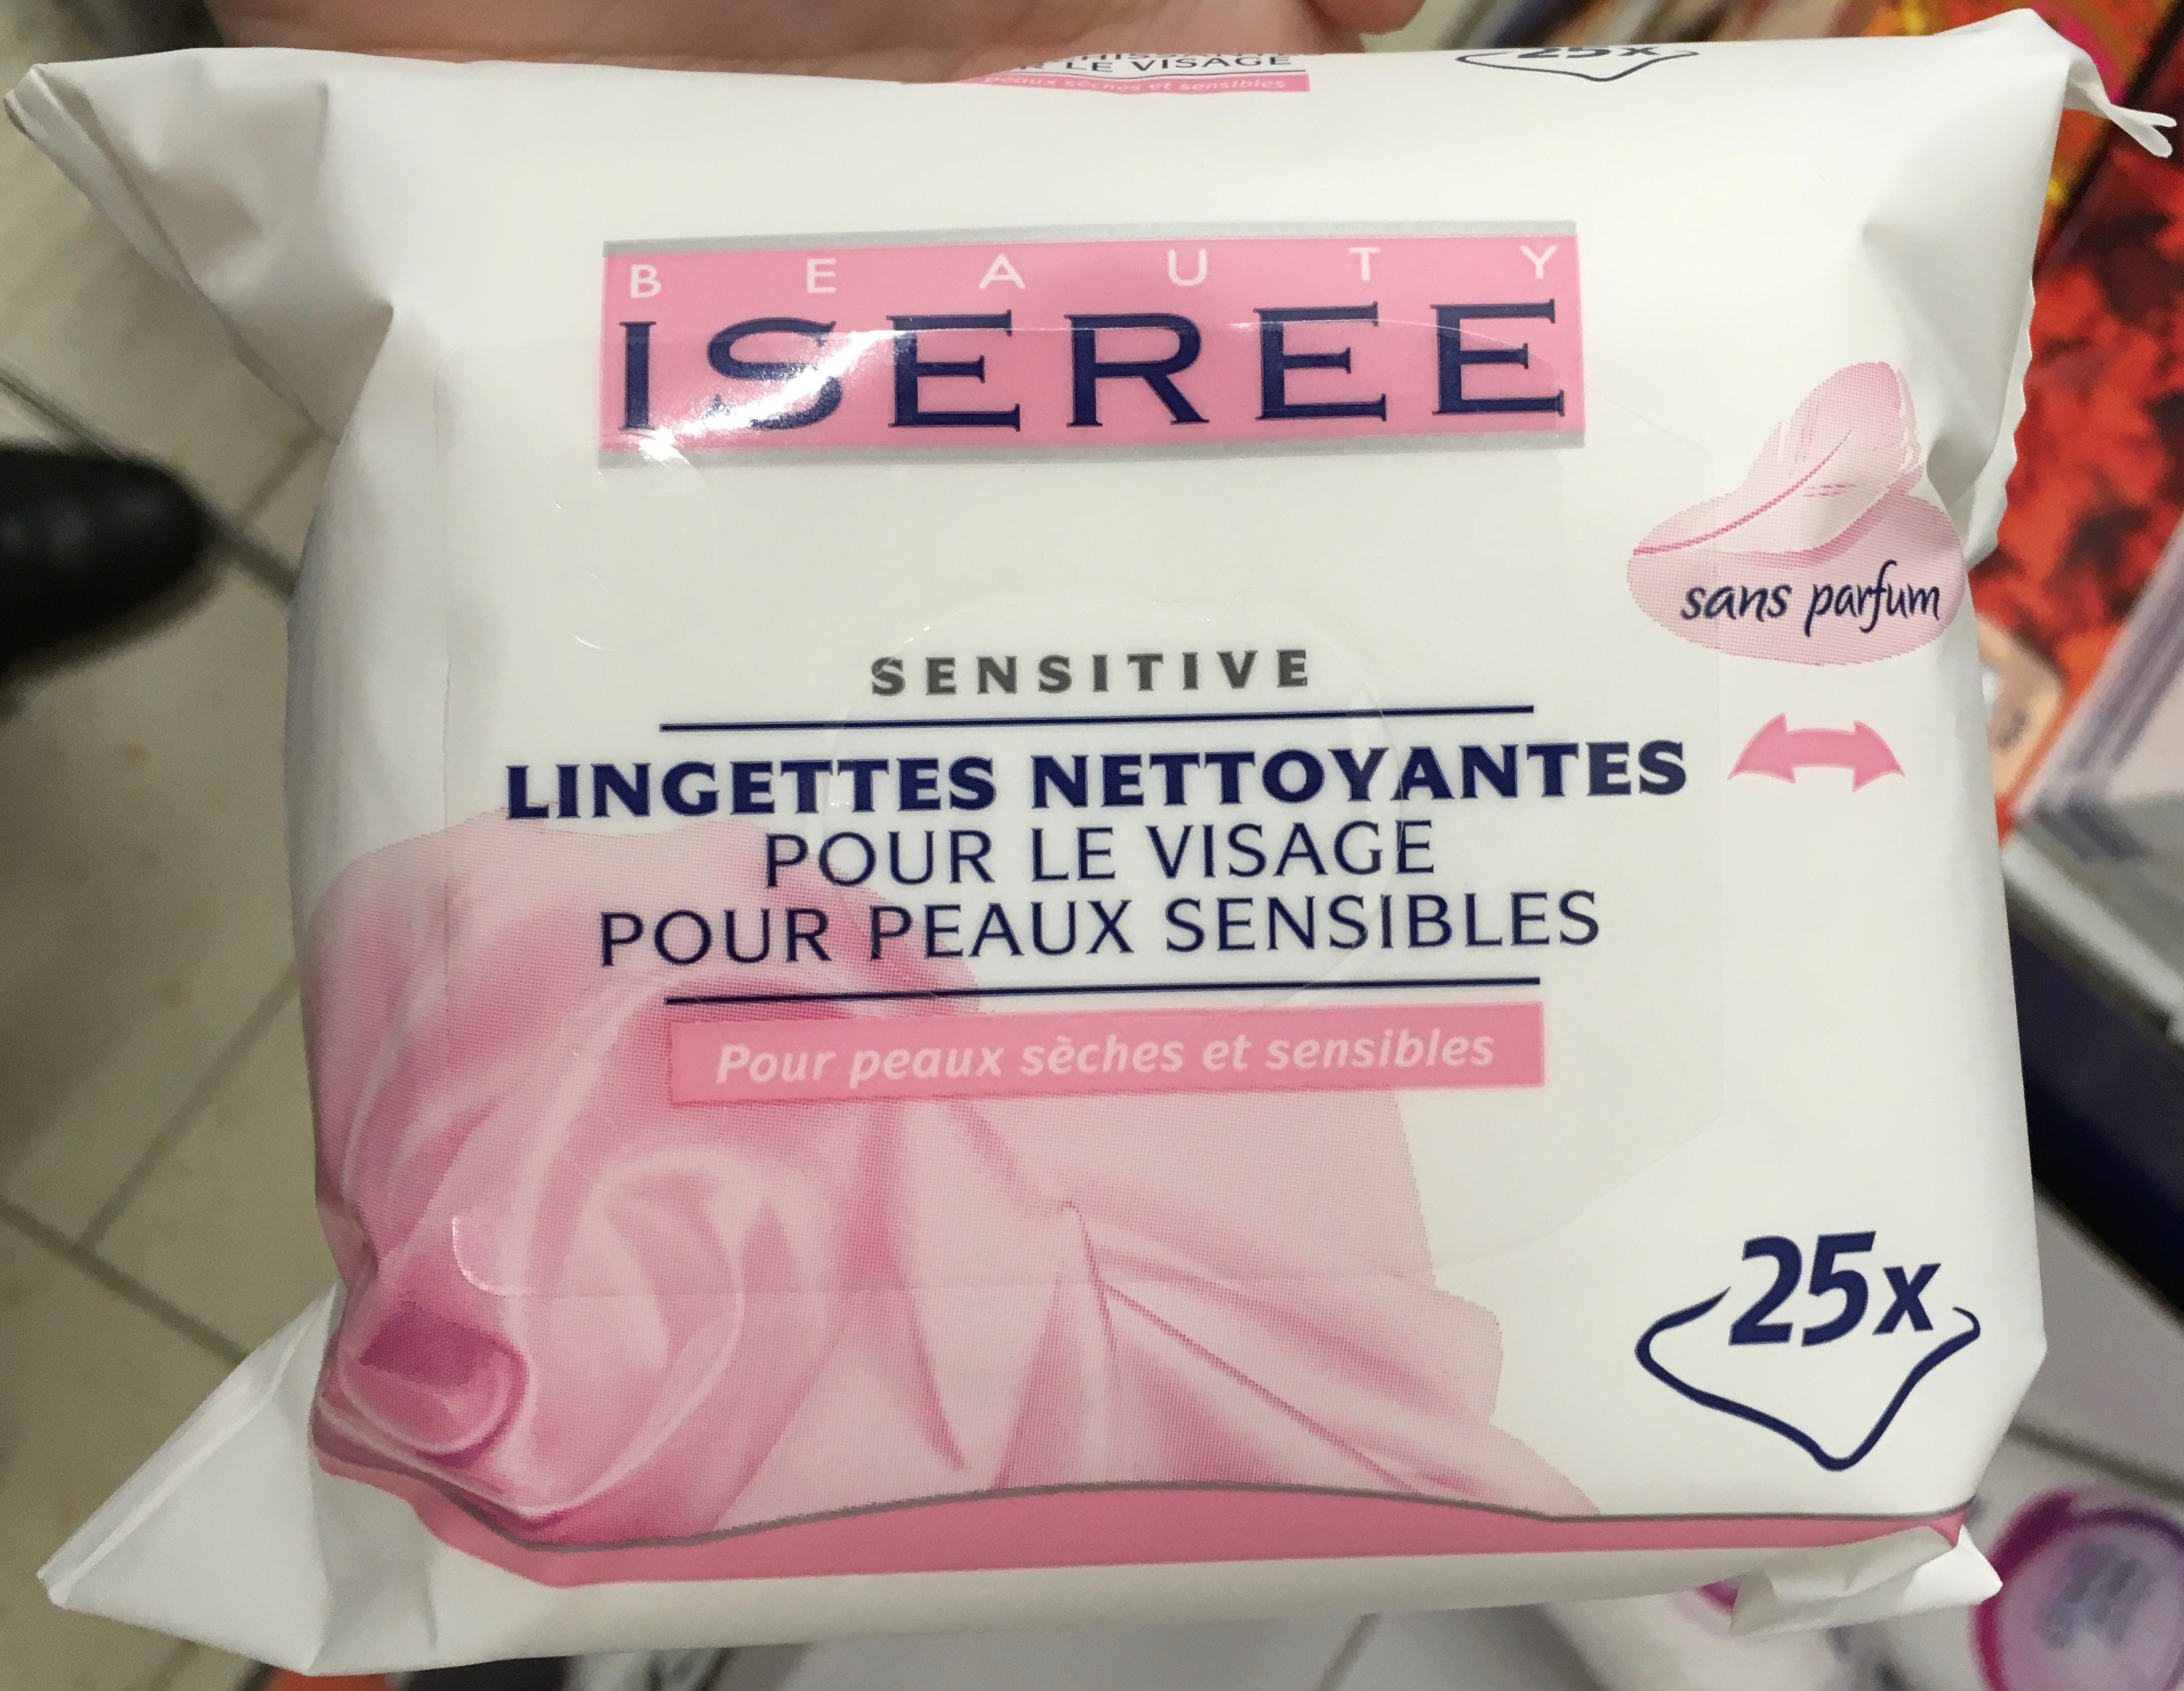 Sensitive Lingettes Nettoyantes pour peaux sèches et sensibles - Product - fr